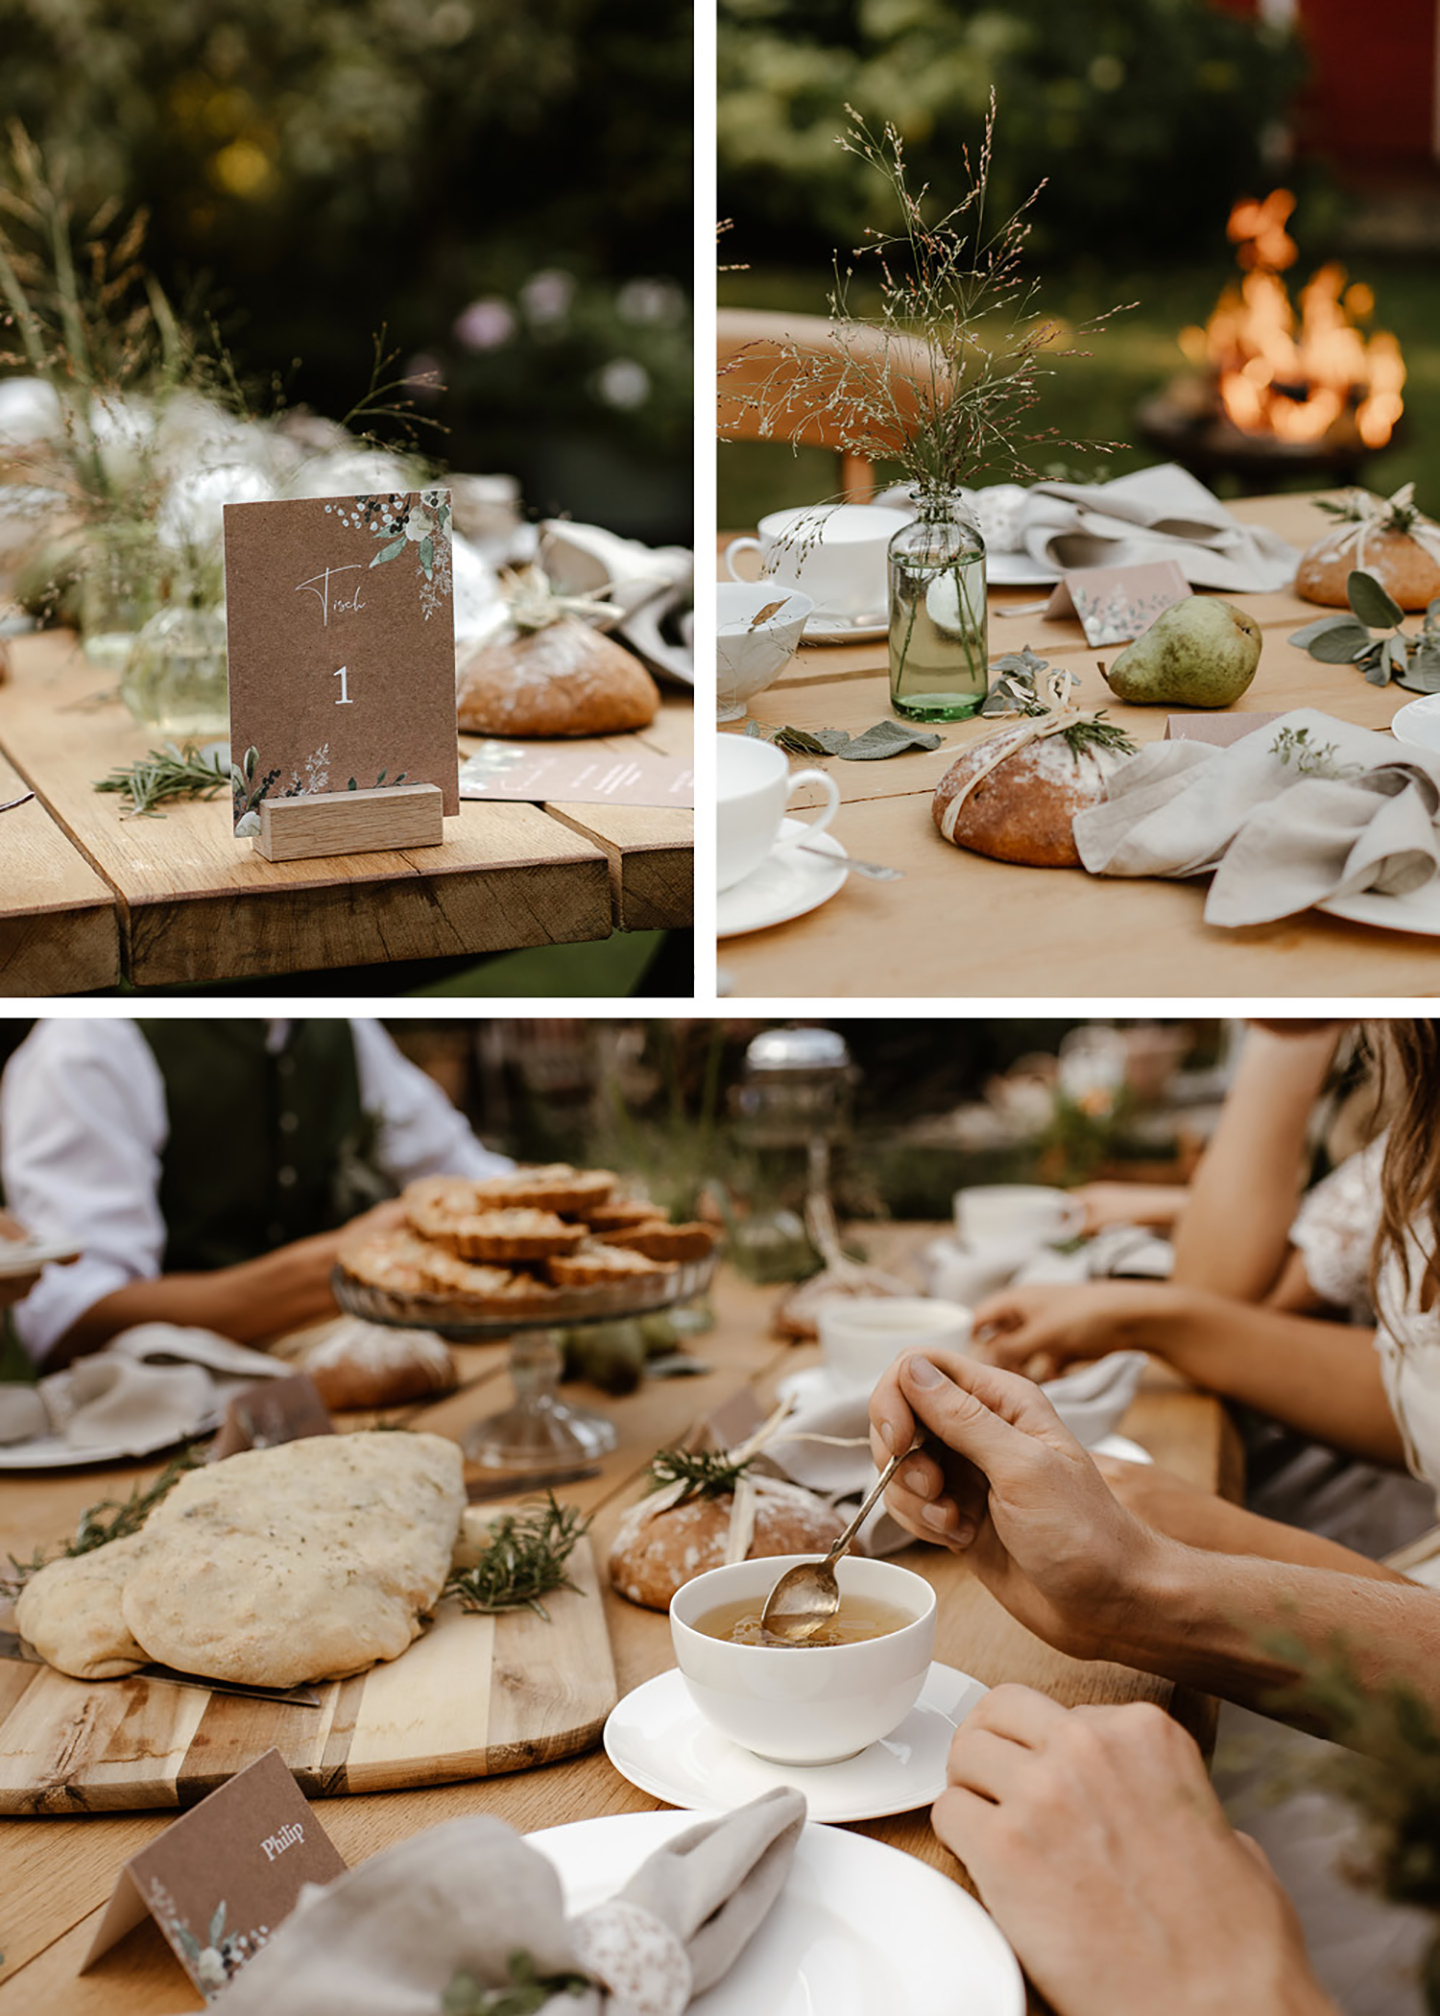 Die Papeterie hat den selben Stil wie die ganze Hochzeit: Das rustikale Naturpapier wird geziert von hellen Grüntönen als handillustrierte Pflanzenelemente. Zu sehen ist die Papeterie auf dem Tisch angeordnet. 